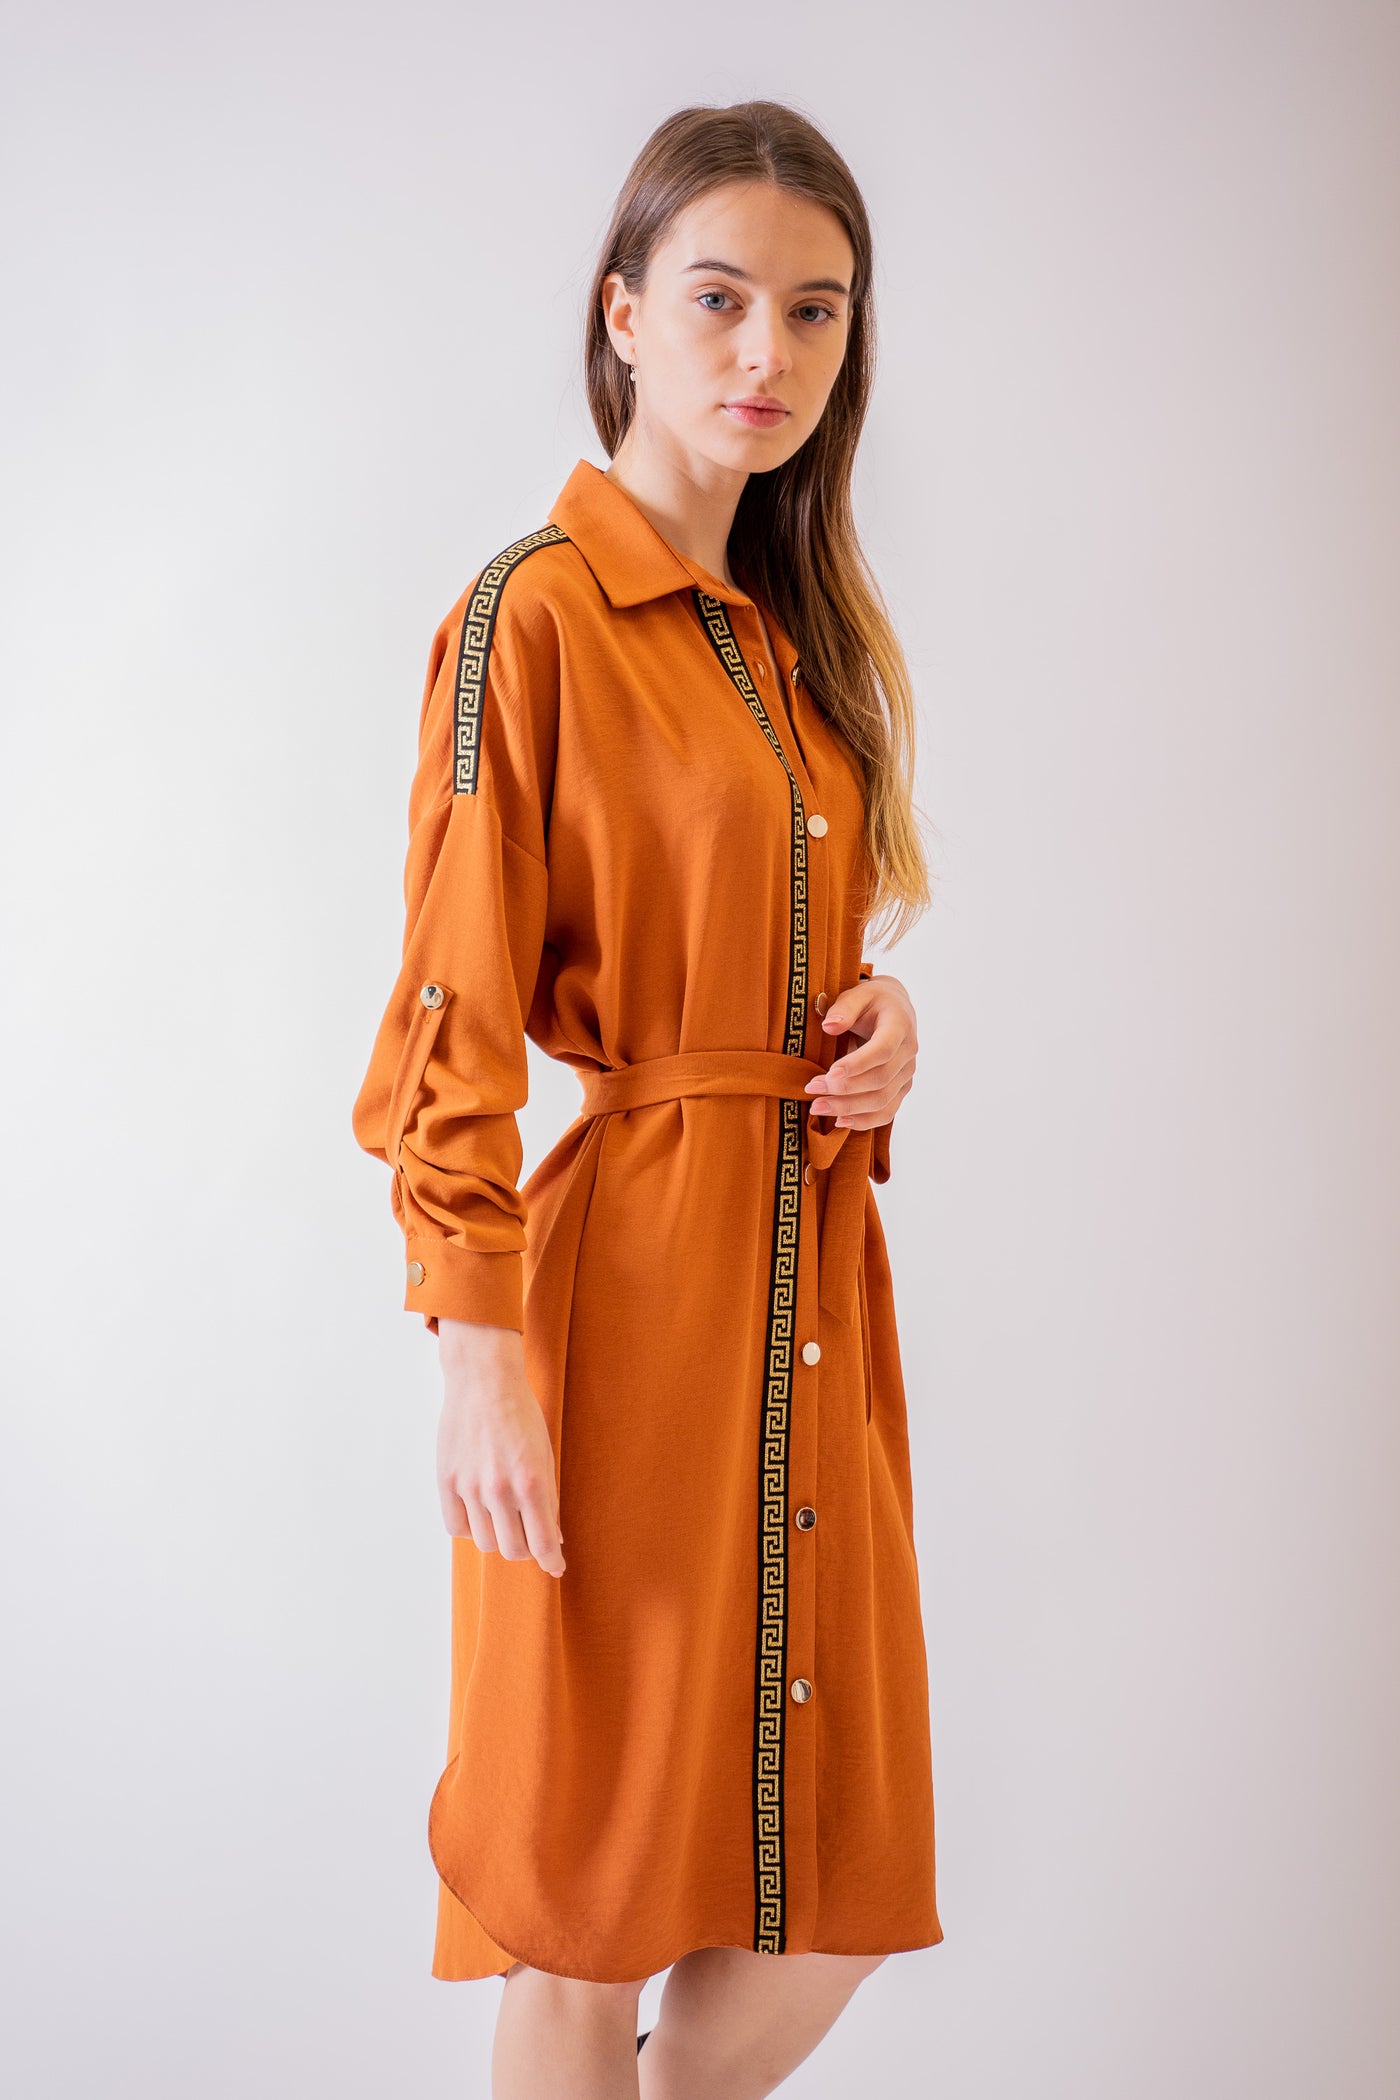 Oranžové košeľové šaty s lemom - Šaty